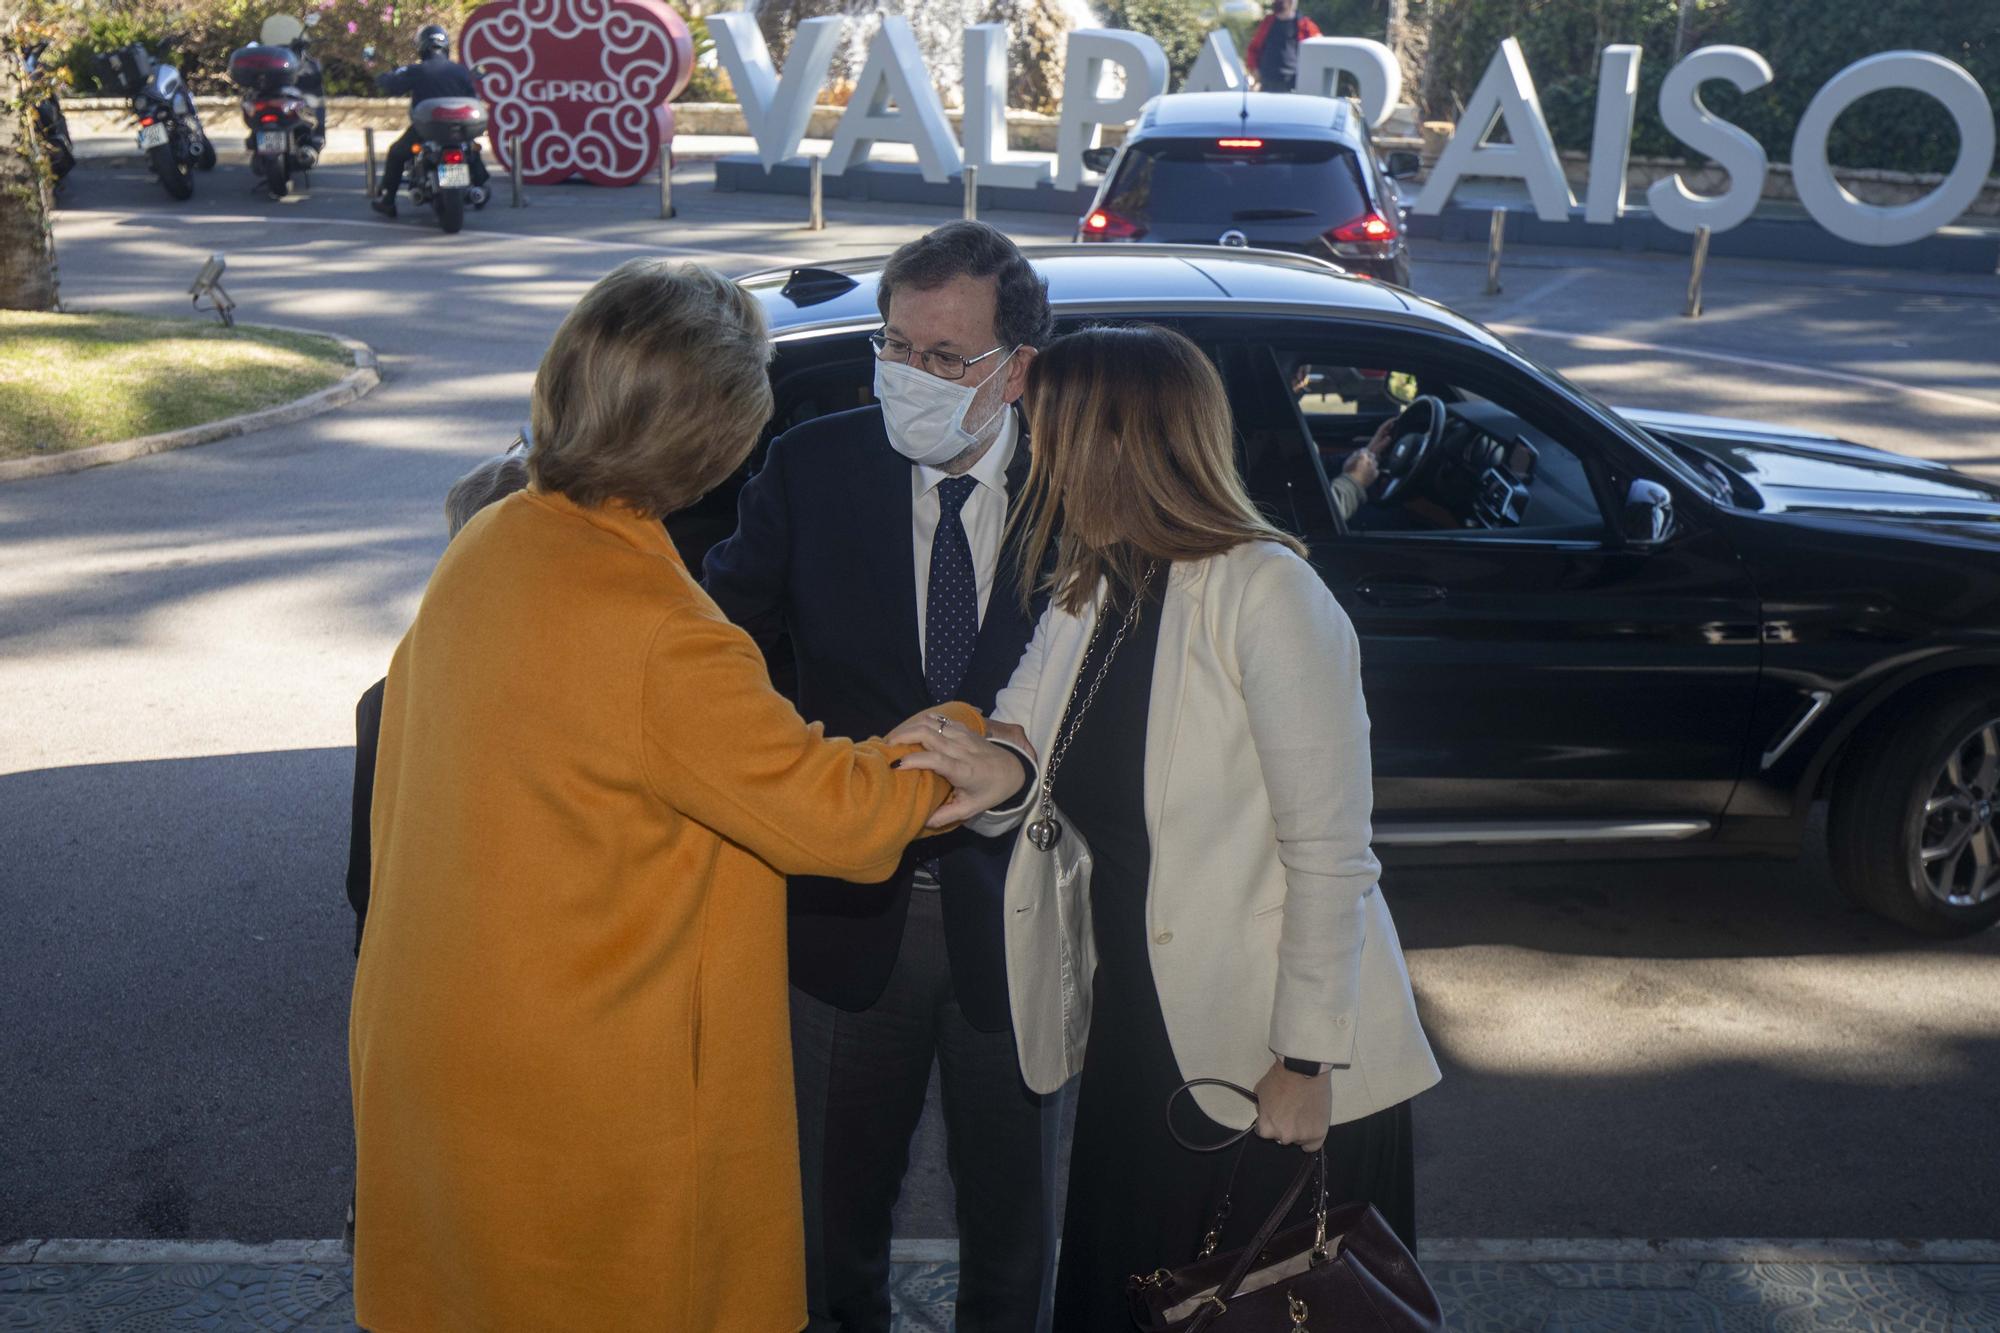 Rajoy, en Palma: "Por fortuna seguimos teniendo bipartidismo y rey"